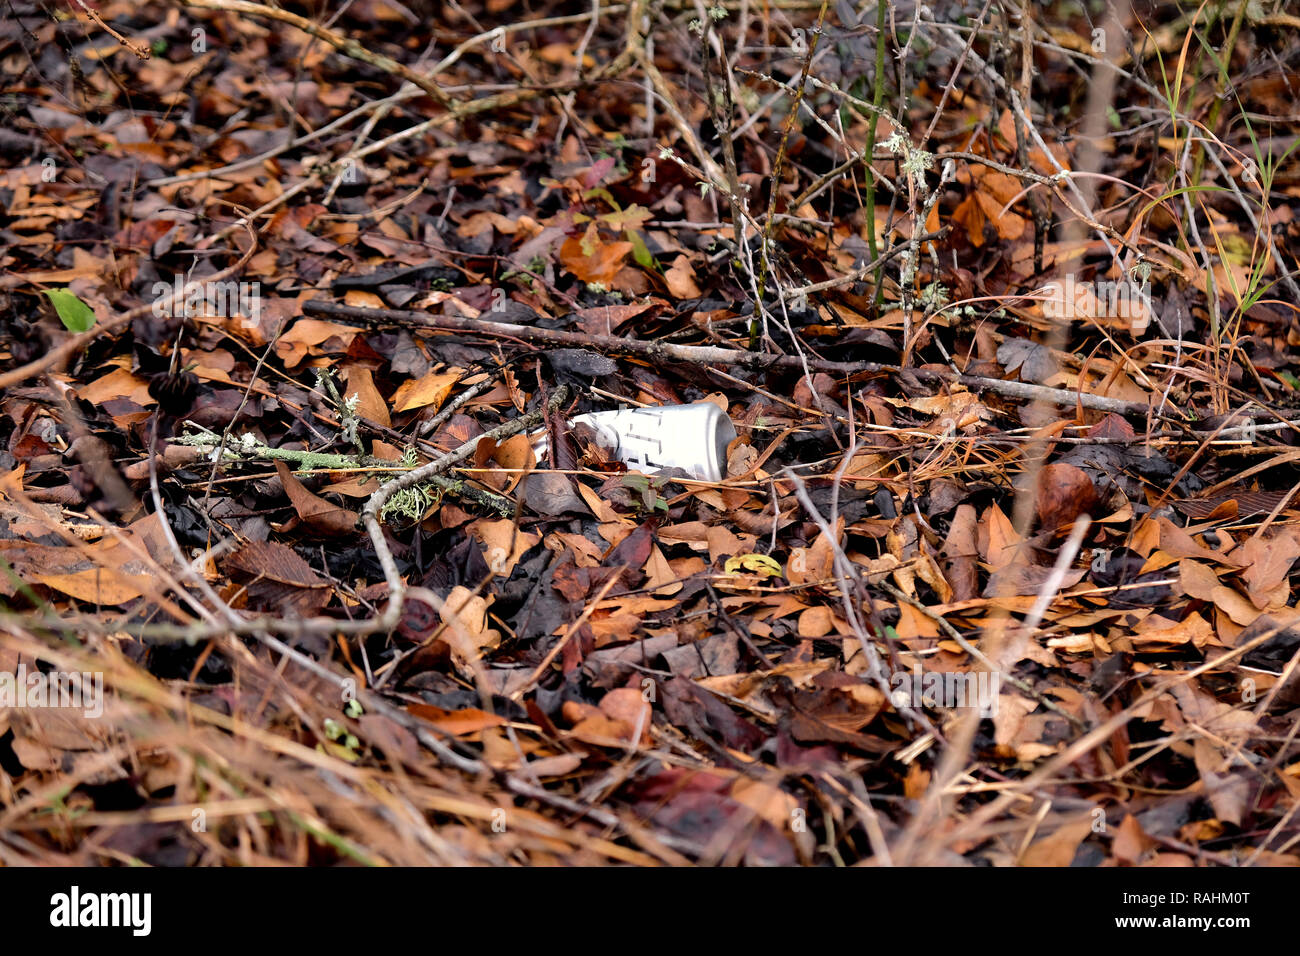 Lata de cerveza vacías tirado en el suelo en medio de hojas de aluminio en la naturaleza; la contaminación; la basura en la naturaleza. Foto de stock